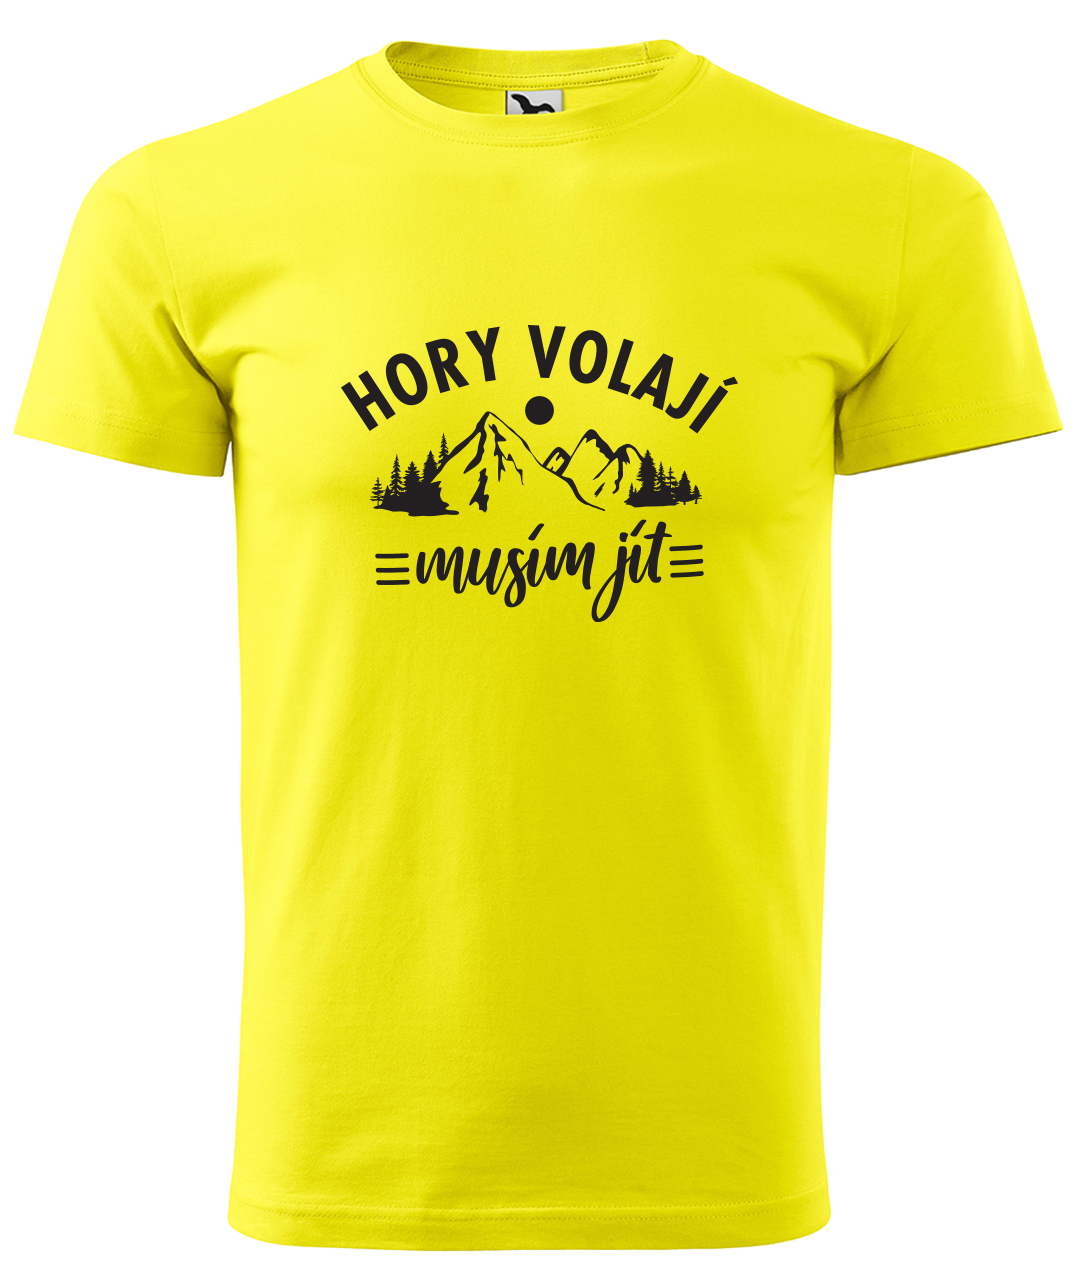 Dětské tričko na hory - Hory volají, musím jít Velikost: 4 roky / 110 cm, Barva: Žlutá (04), Délka rukávu: Dlouhý rukáv